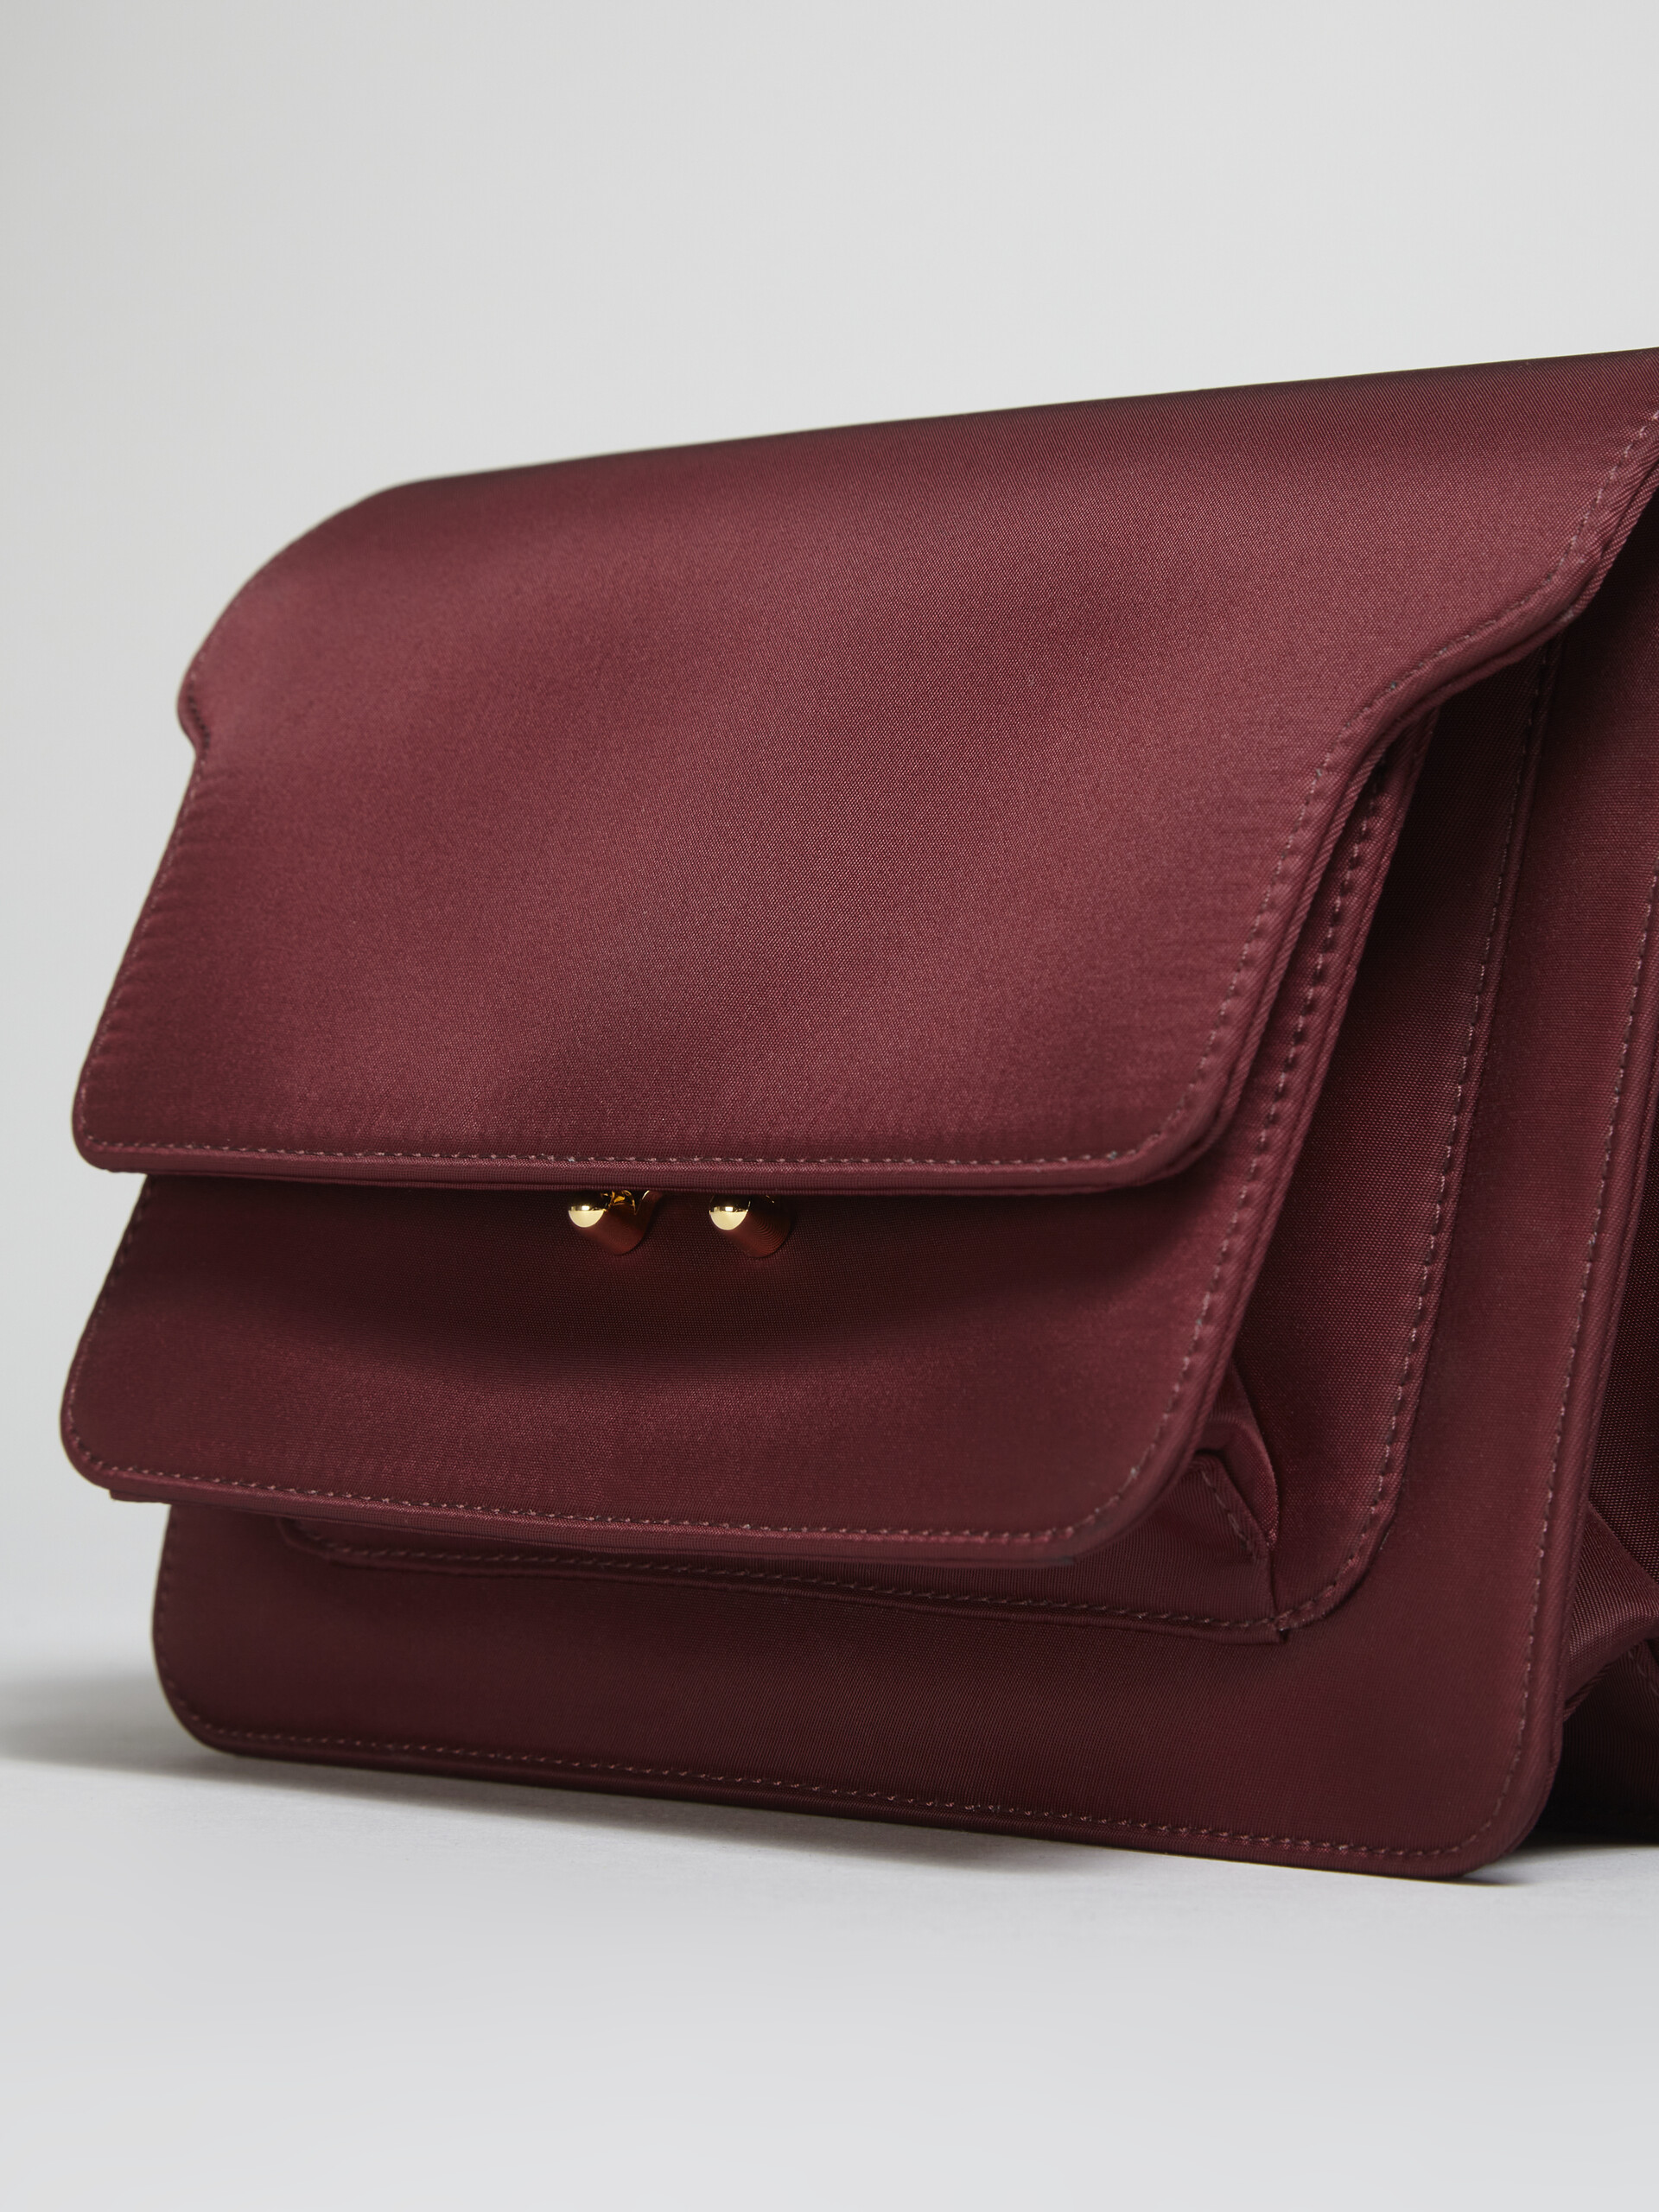 TRUNK LIGHT bag in nylon imbottito rosso - Borse a spalla - Image 2